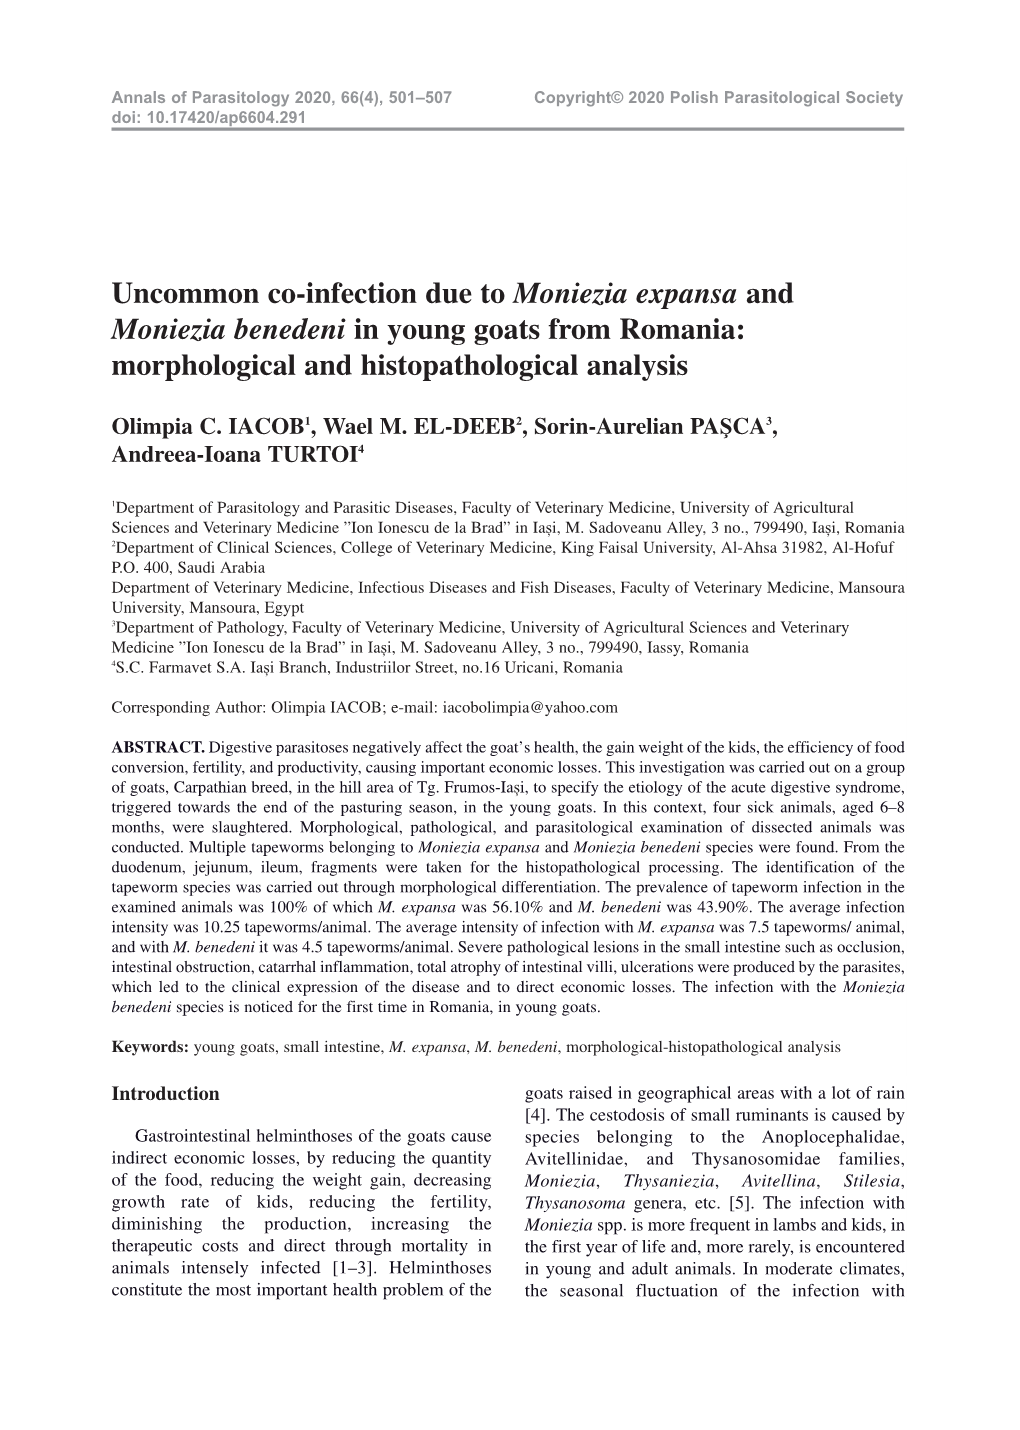 Morphological and Histopathological Analysis